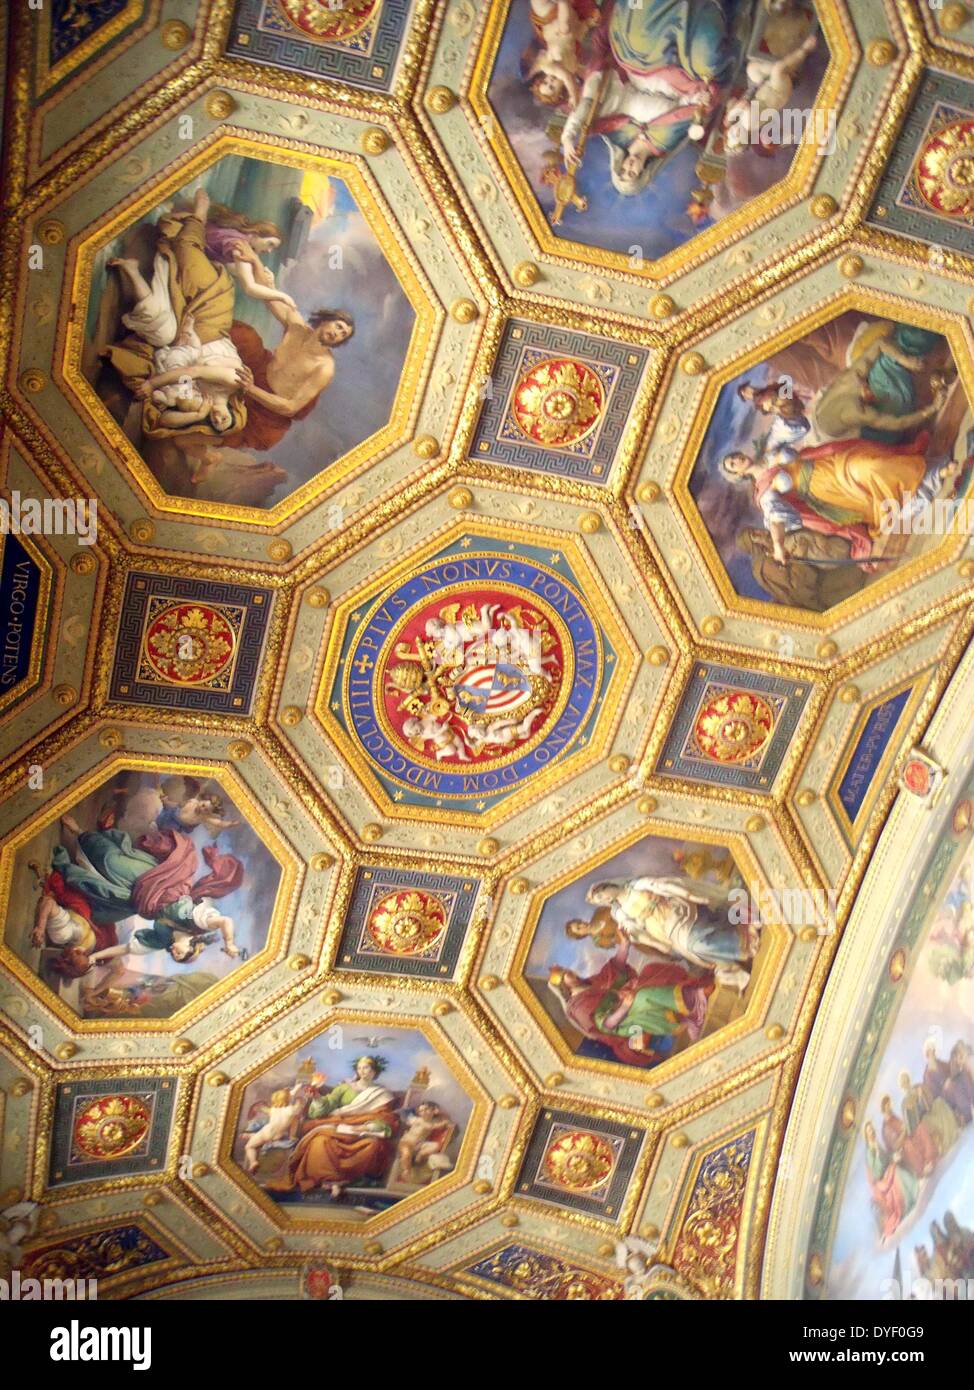 Detalle de los Museos del Vaticano, una inmensa colección de obras maestras del Renacimiento clásico, etc. fundada a principios del siglo XVI por el Papa Julio II se consideran algunos de los más grandes museos del mundo. Esta imagen muestra una parte del bonito techo pintado. Foto de stock